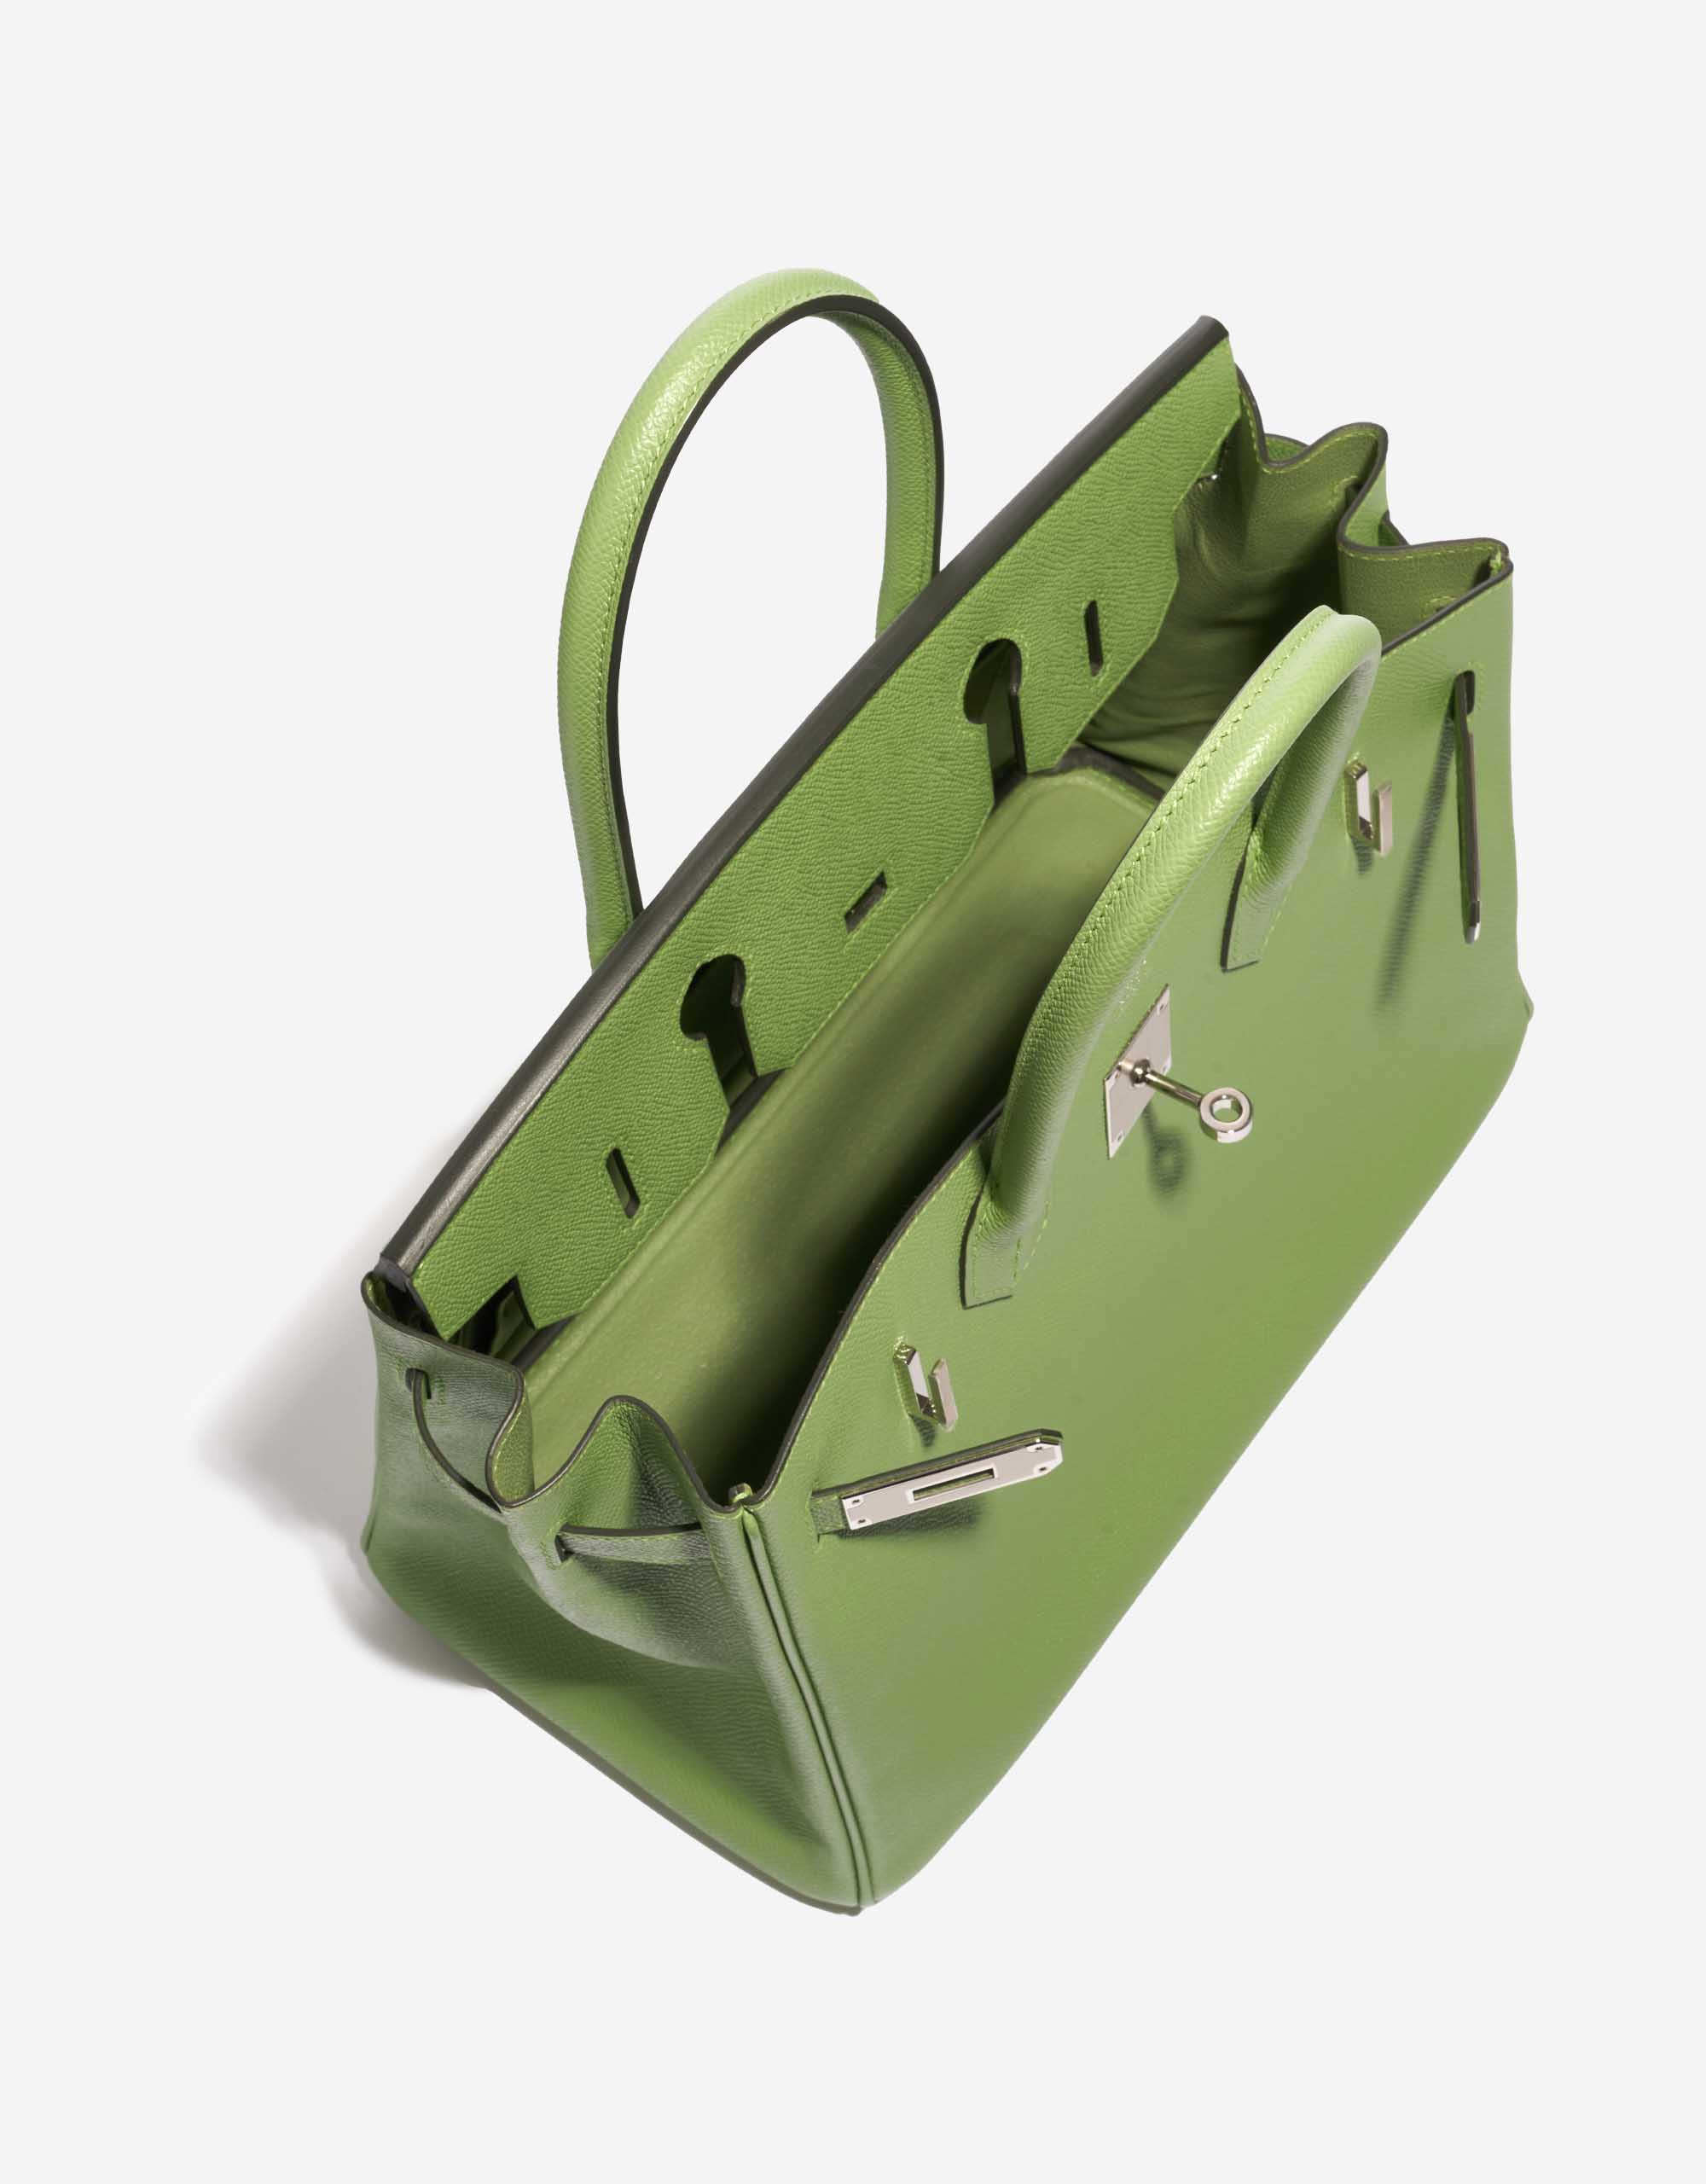 Pre-owned Hermès Tasche Birkin 30 Epsom Vert Criquet Grün Innenseite | Verkaufen Sie Ihre Designer-Tasche auf Saclab.com